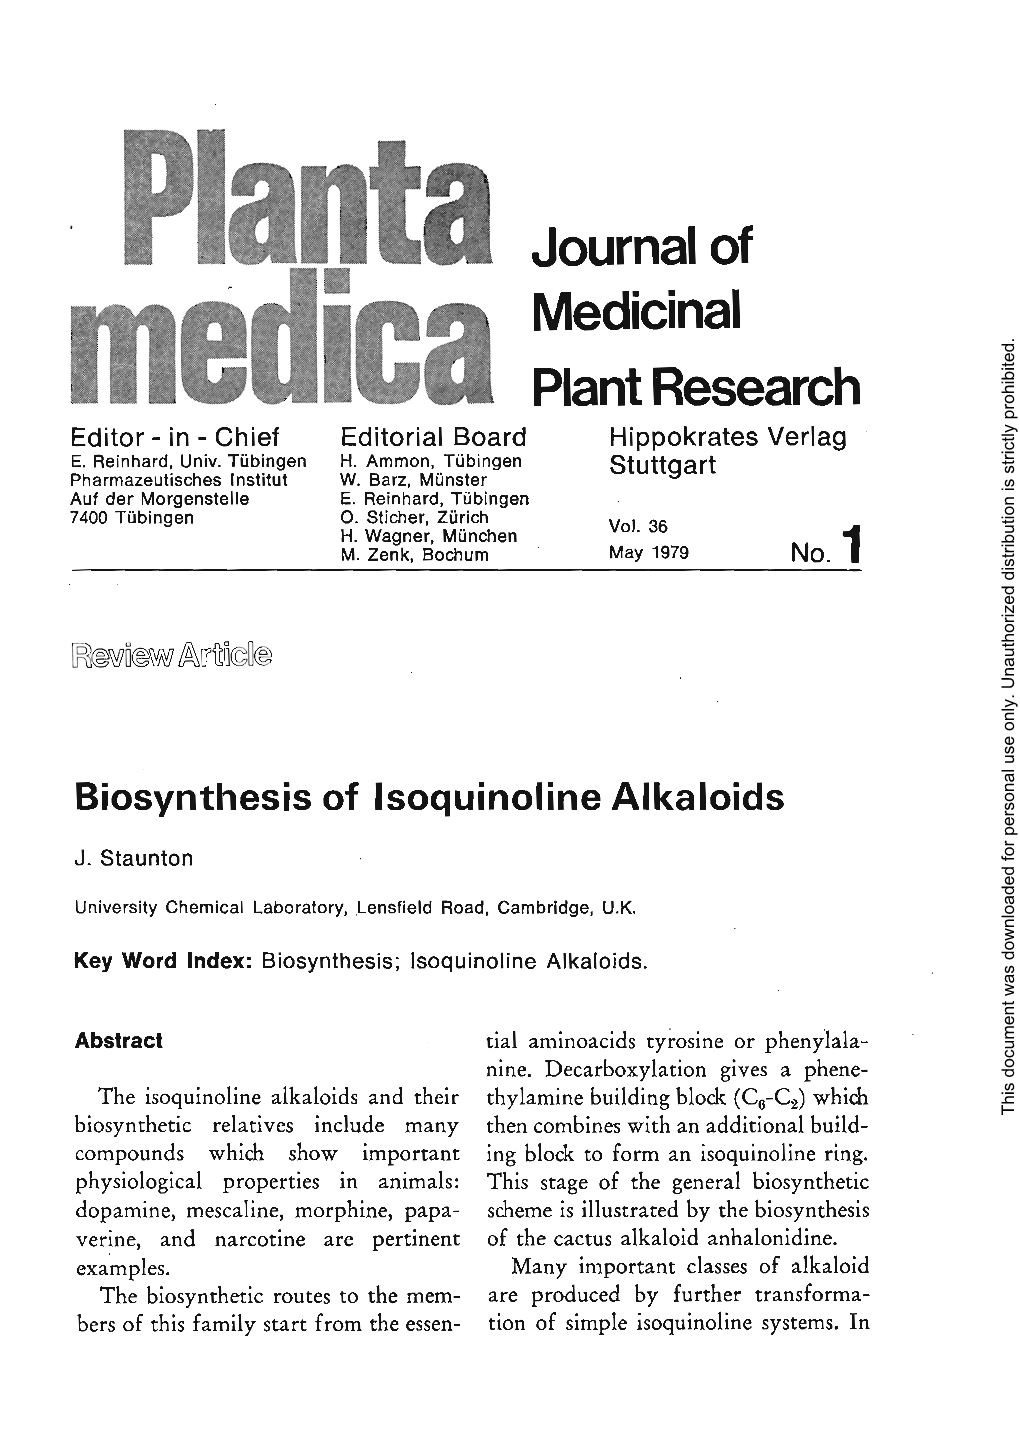 Biosynthesis of Isoquinoline Alkaloids